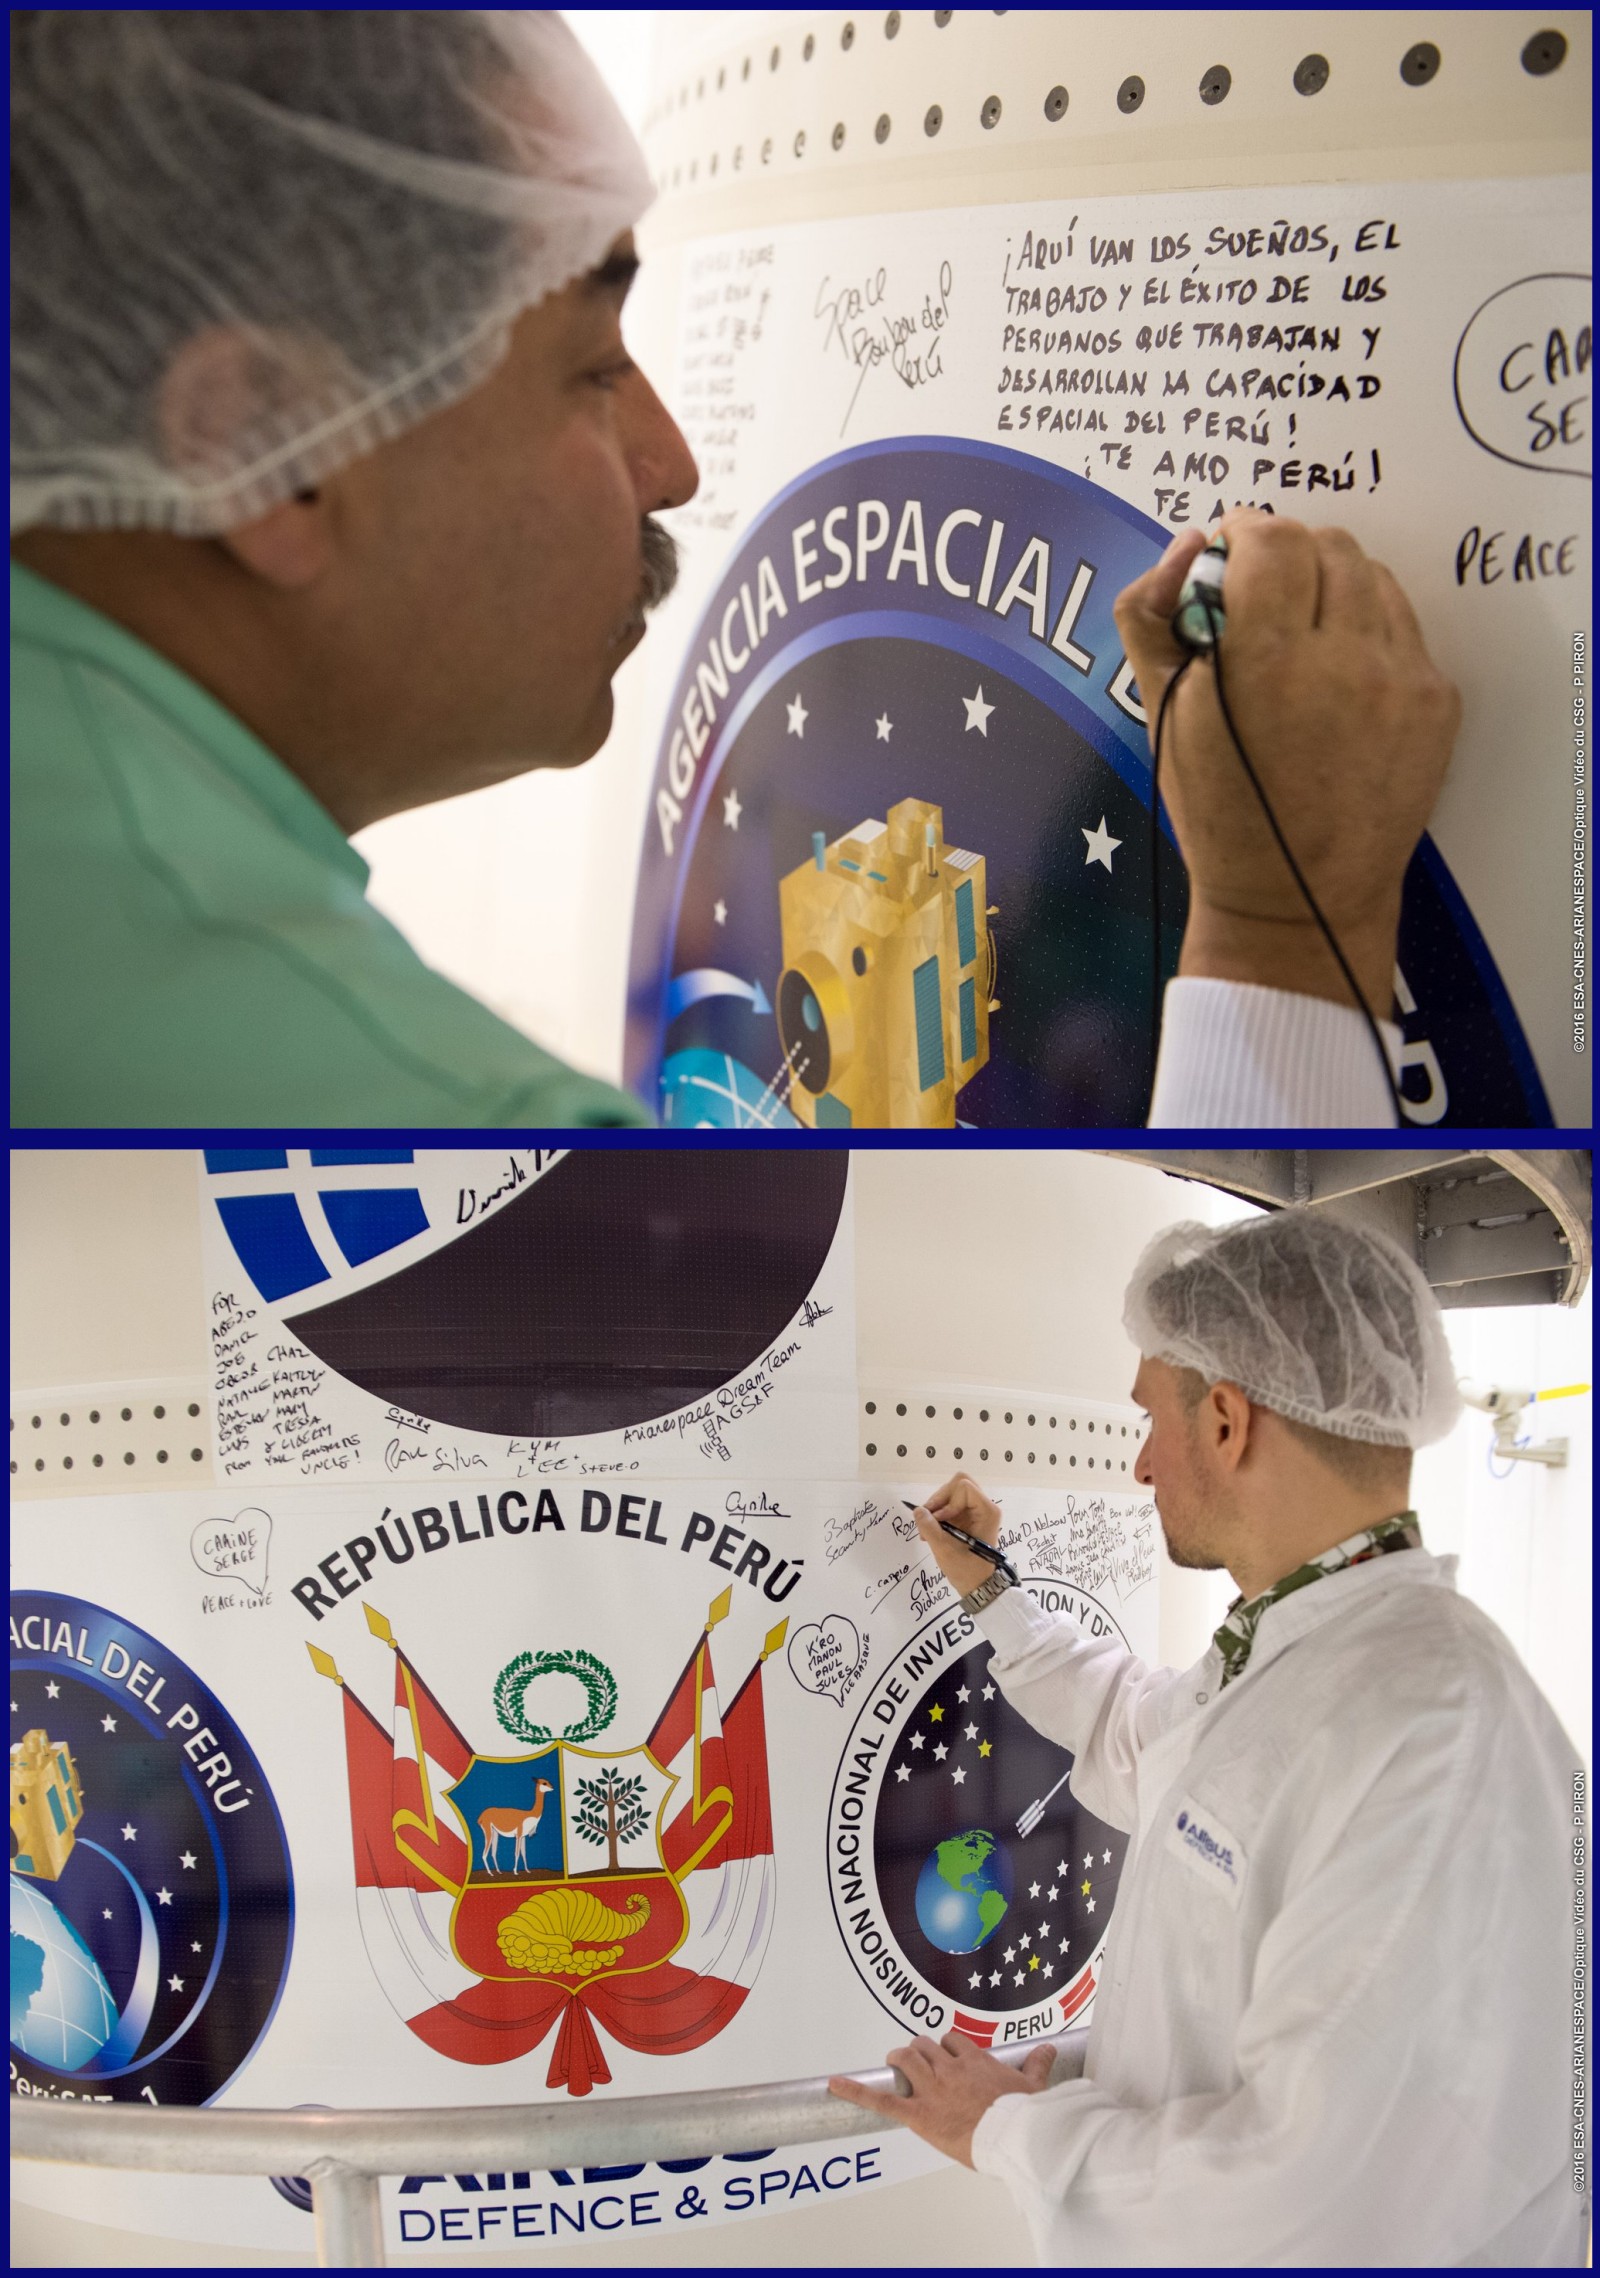 PeruSAT-1 - Skysat - CONIDA - Terra Bella - Airbus Defence and Space - Arianespace - CSG - Signature coiffre - Fairing - Préparation lancement - Vega VV07